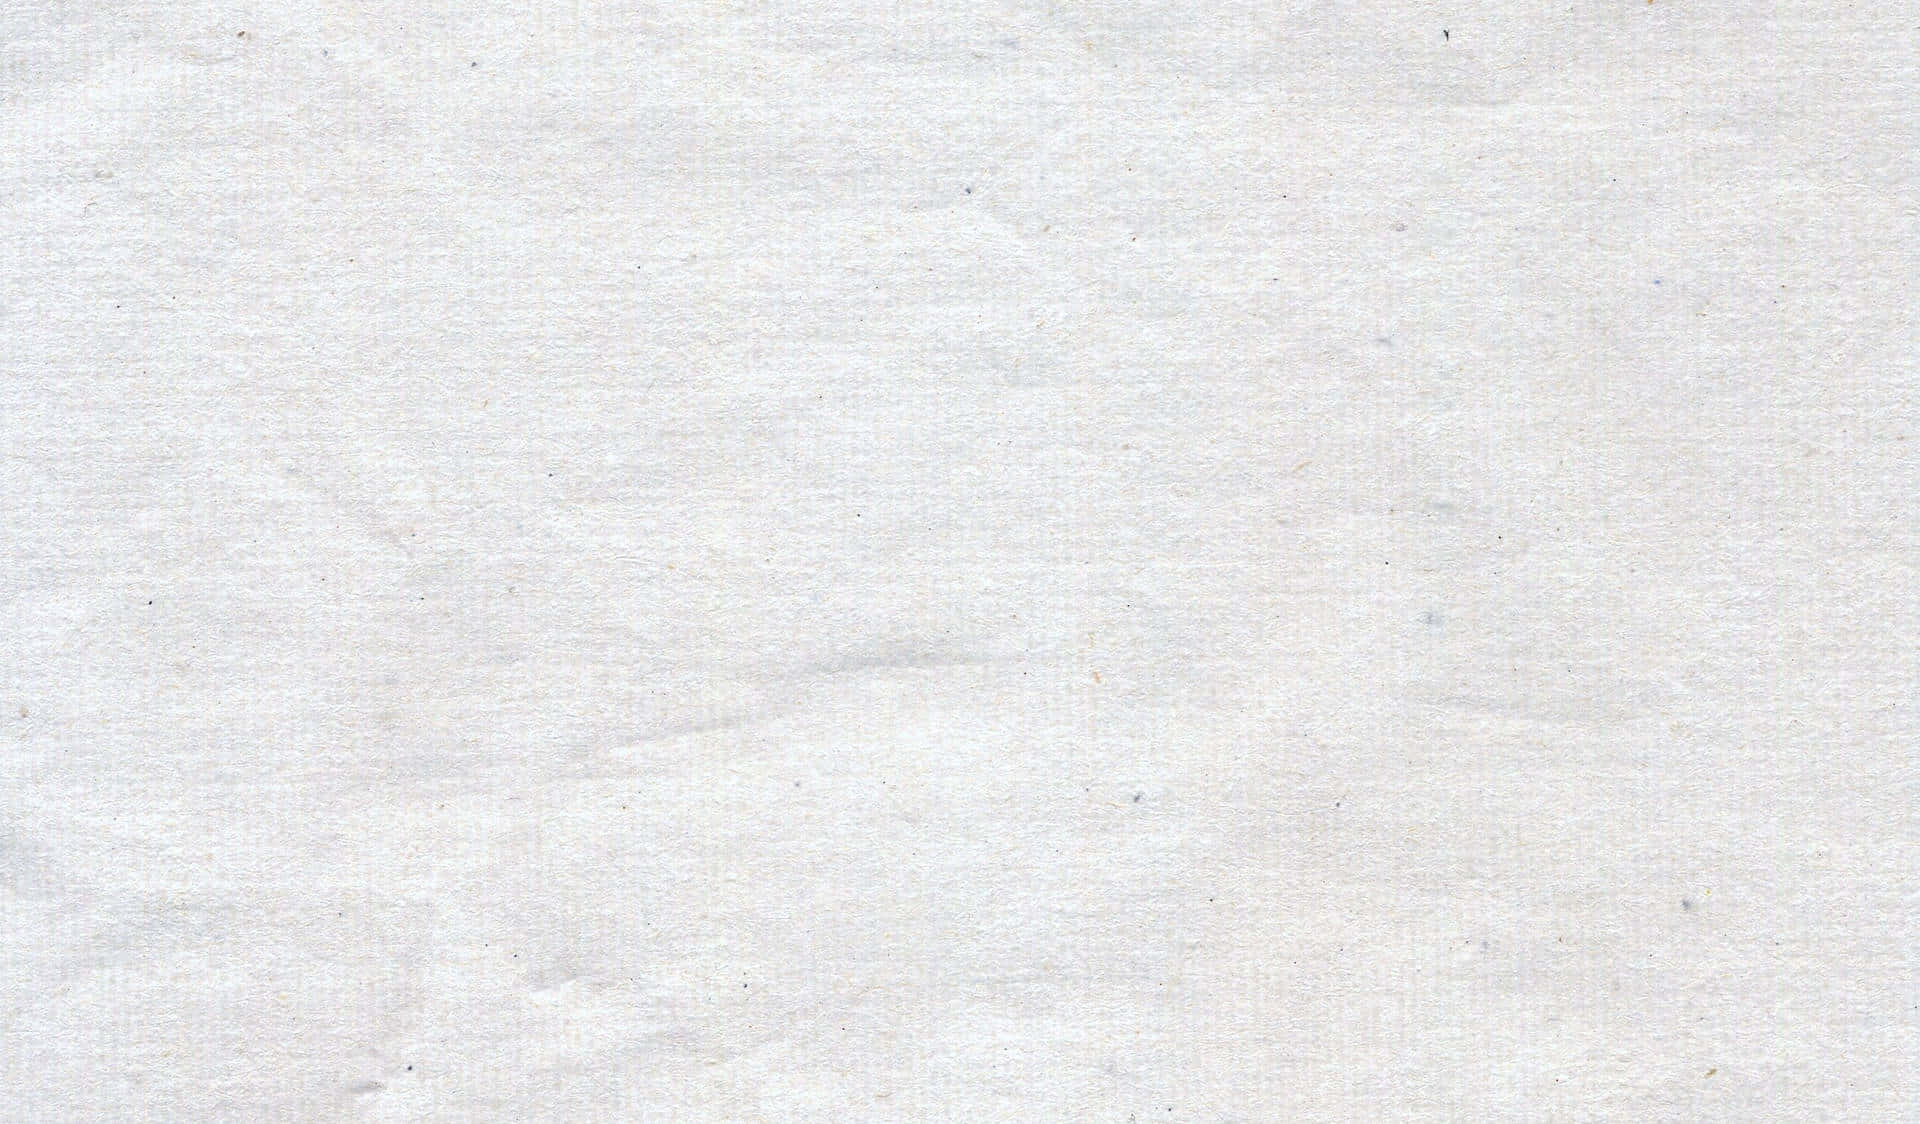 Ensimpel Hvid Papirstruktur Baggrund.